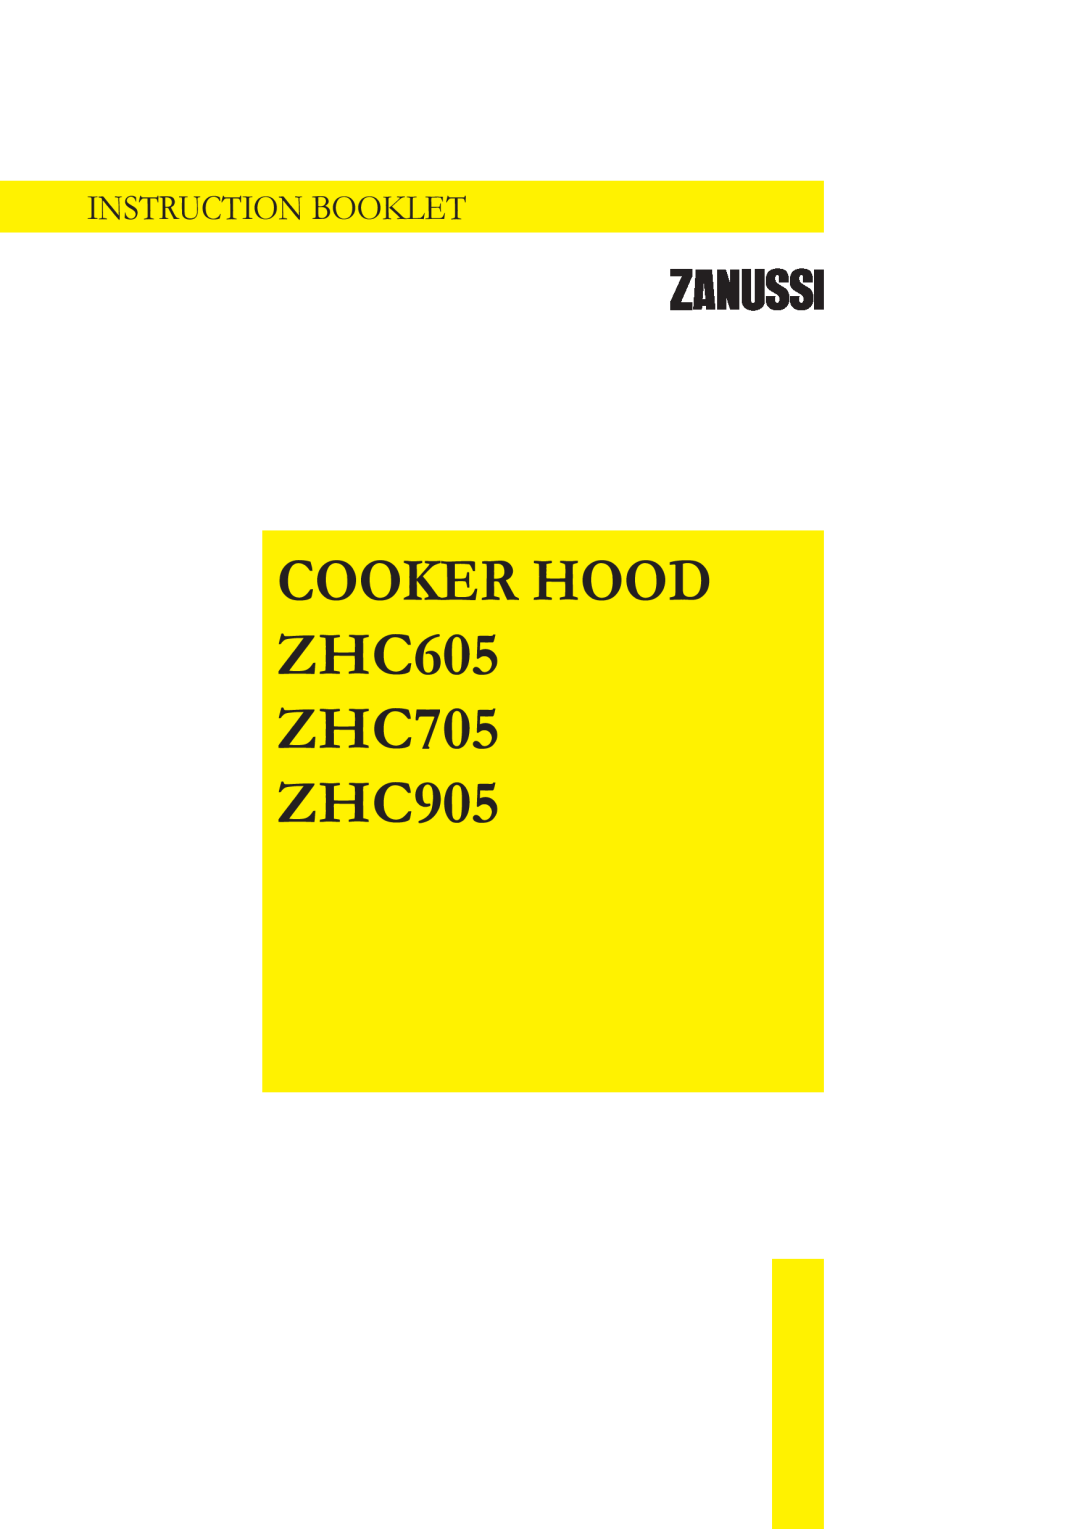 Zanussi ZHC605, ZHC705, ZHC905 manual COOKER HOOD ZHC605 ZHC705 ZHC905, Instruction Booklet 